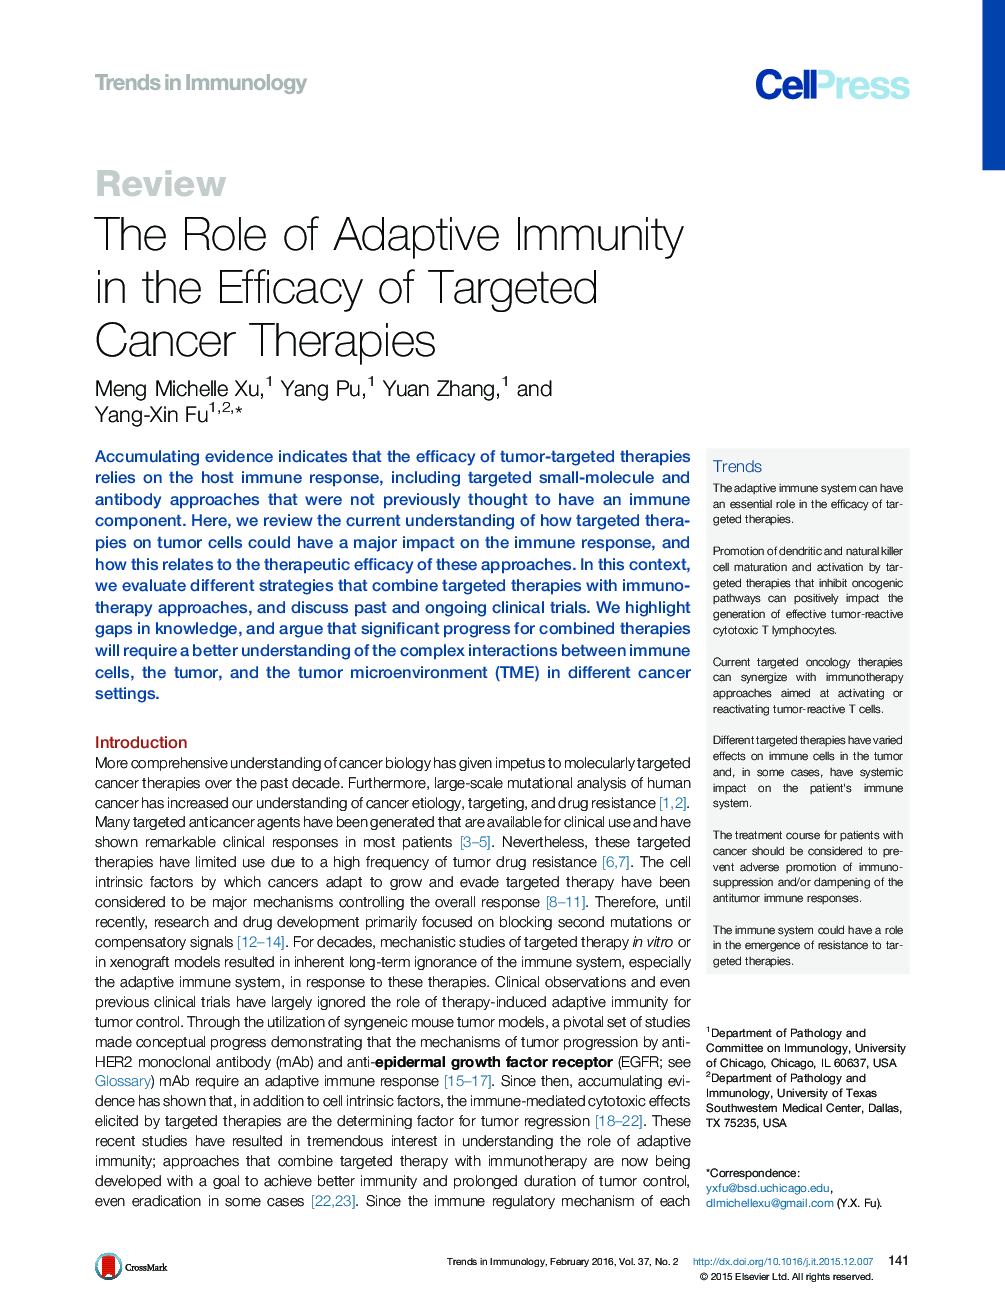 نقش ایمنی انطباق در اثربخشی درمان های سرطانی هدفمند 